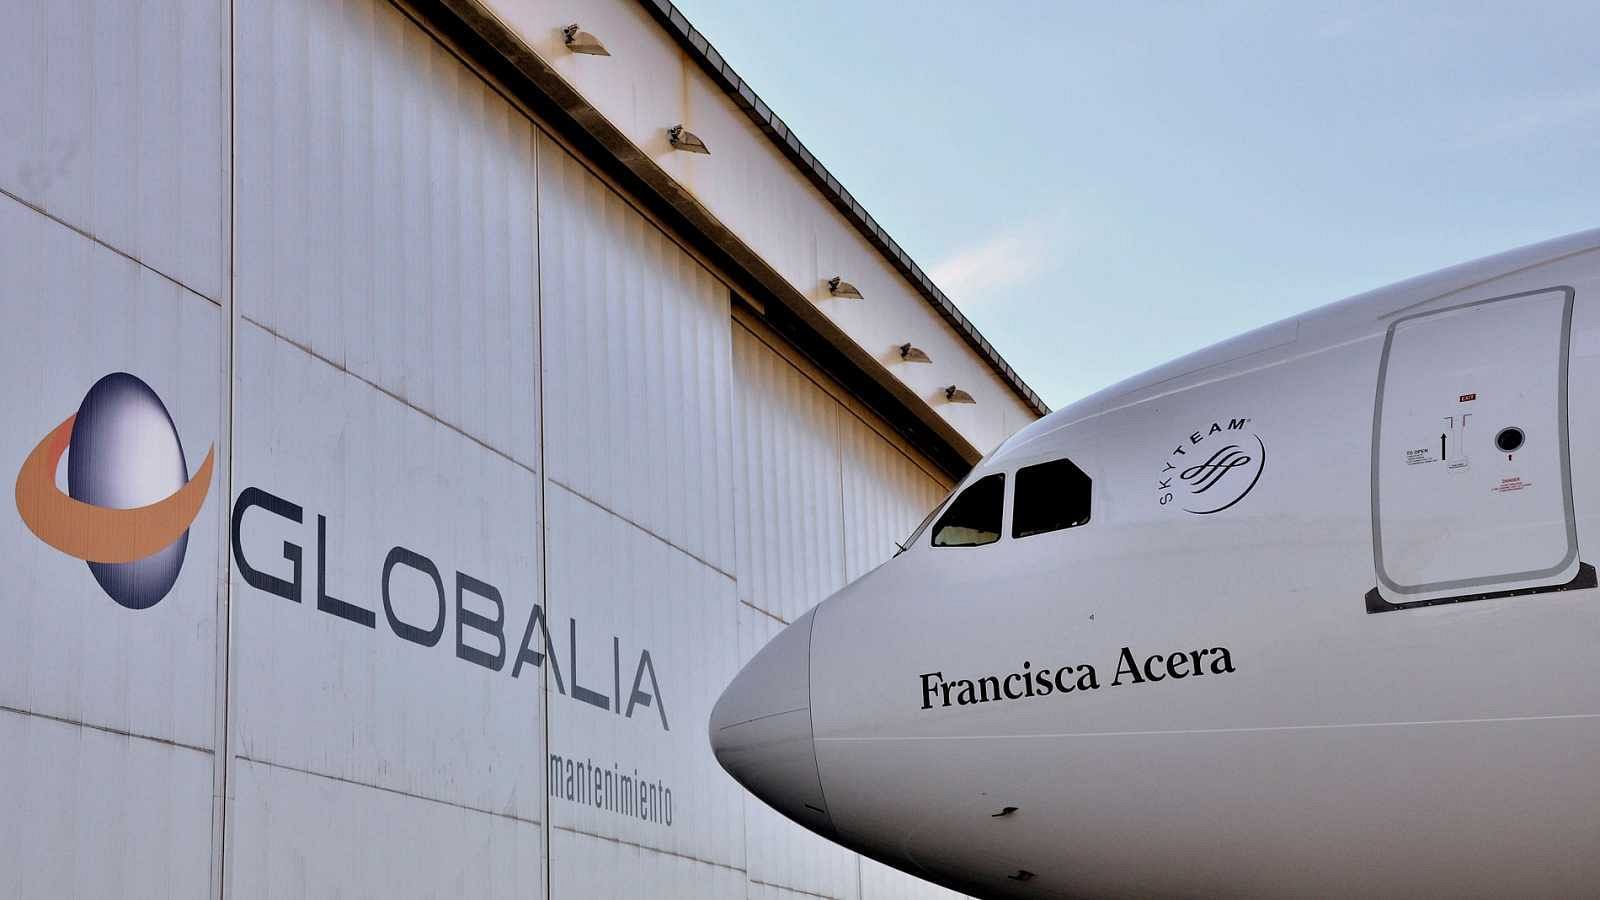  Globalia y Barceló firman la fusión de sus áreas de viajes y descartan cerrar agencias